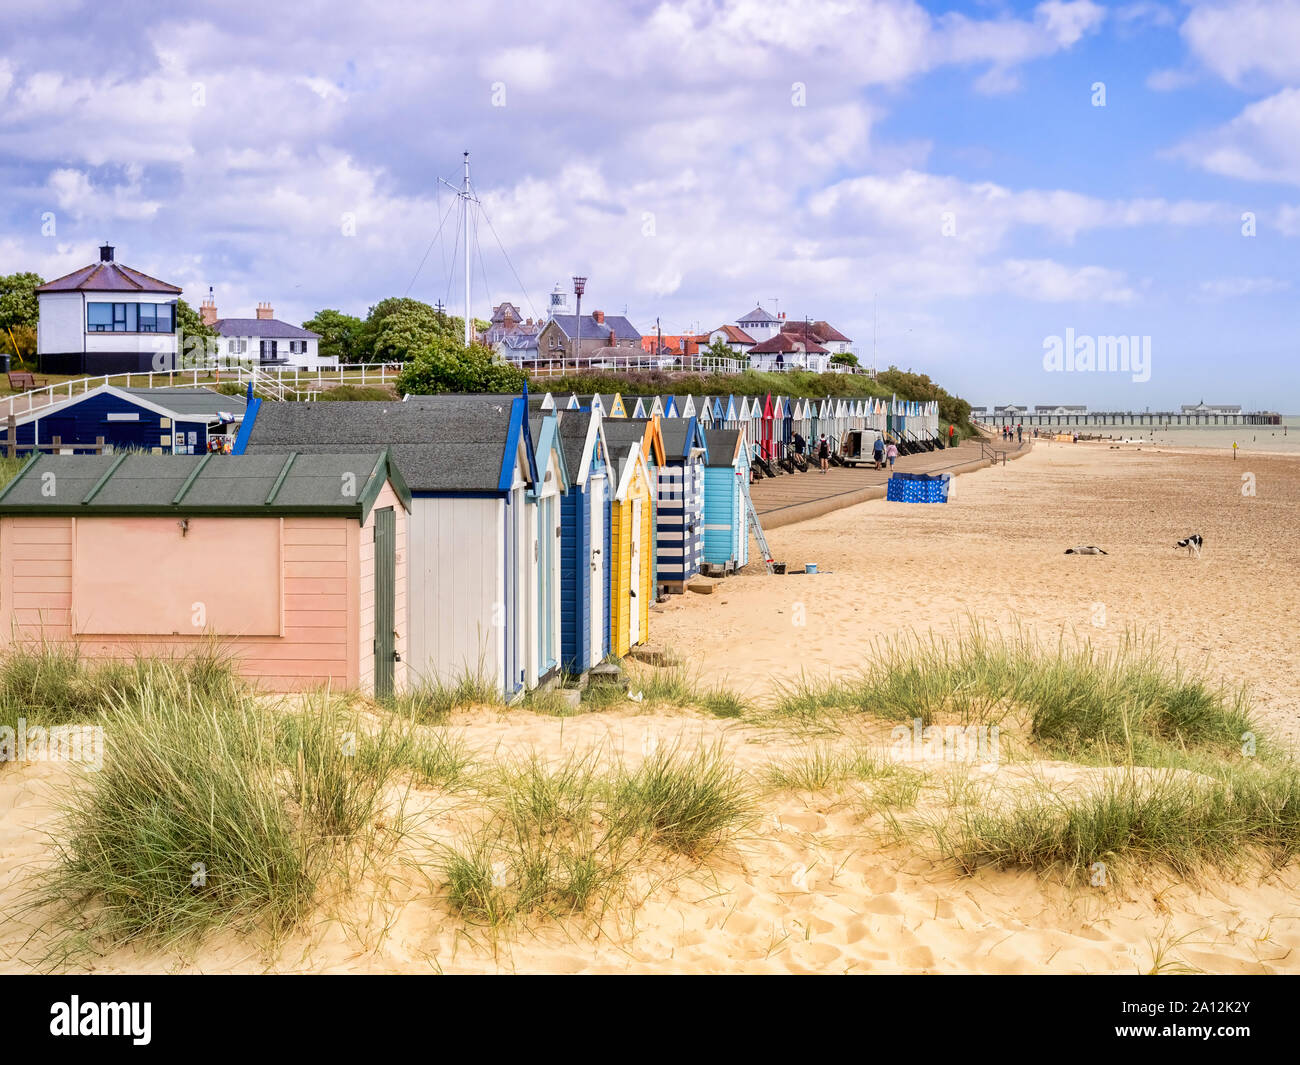 17 Juin 2019 : Southwold, Suffolk, UK - la plage et les cabanes de plage, avec l'embarcadère derrière, à Southwold, Suffolk Banque D'Images